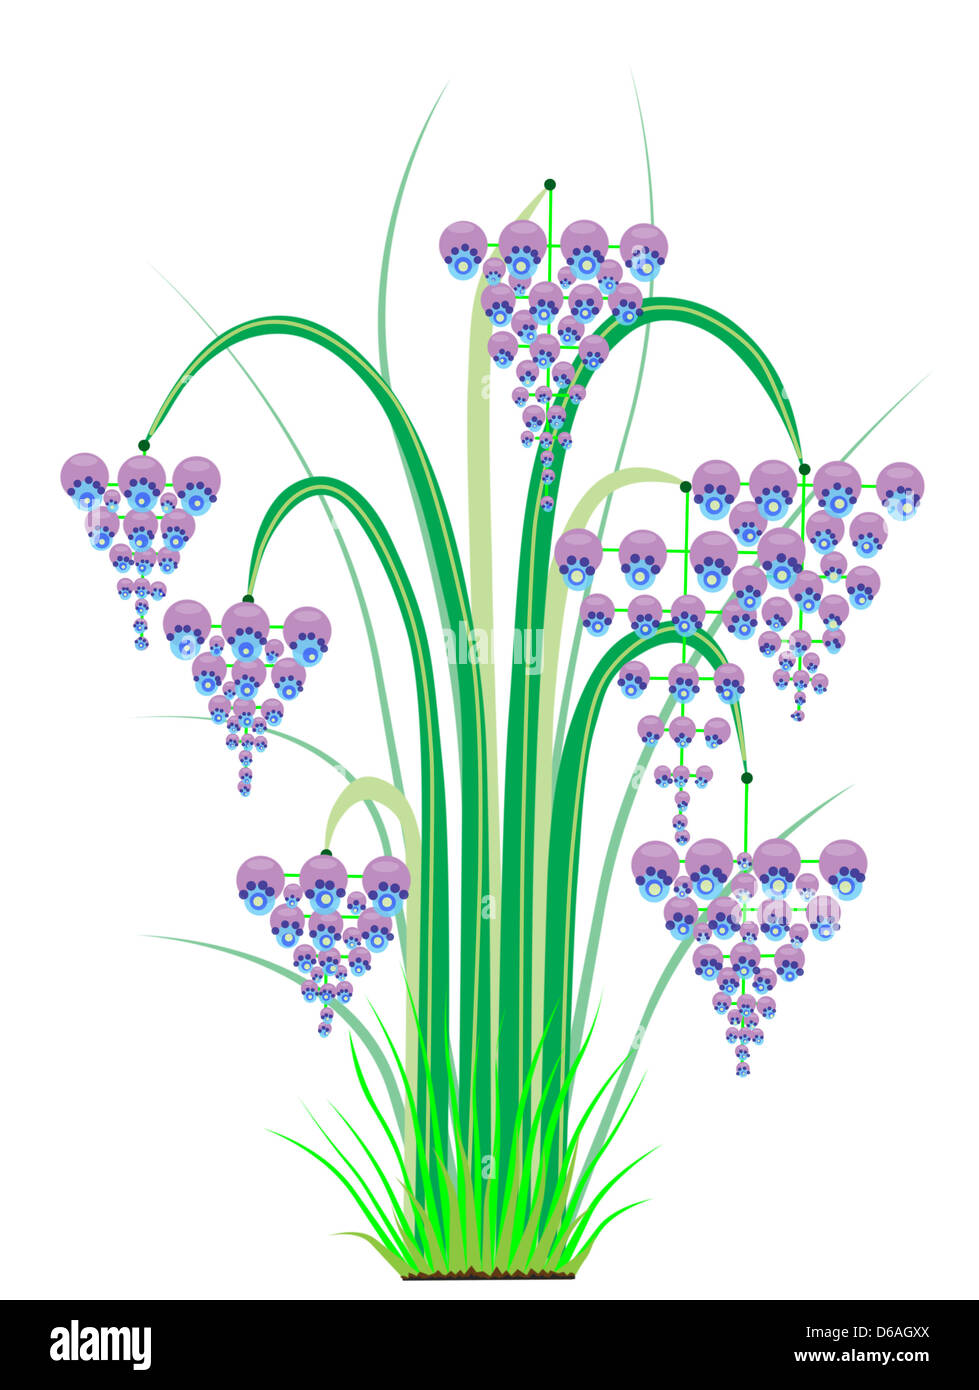 Strauch mit großen blauen violette Glocken Blumen Stockfoto